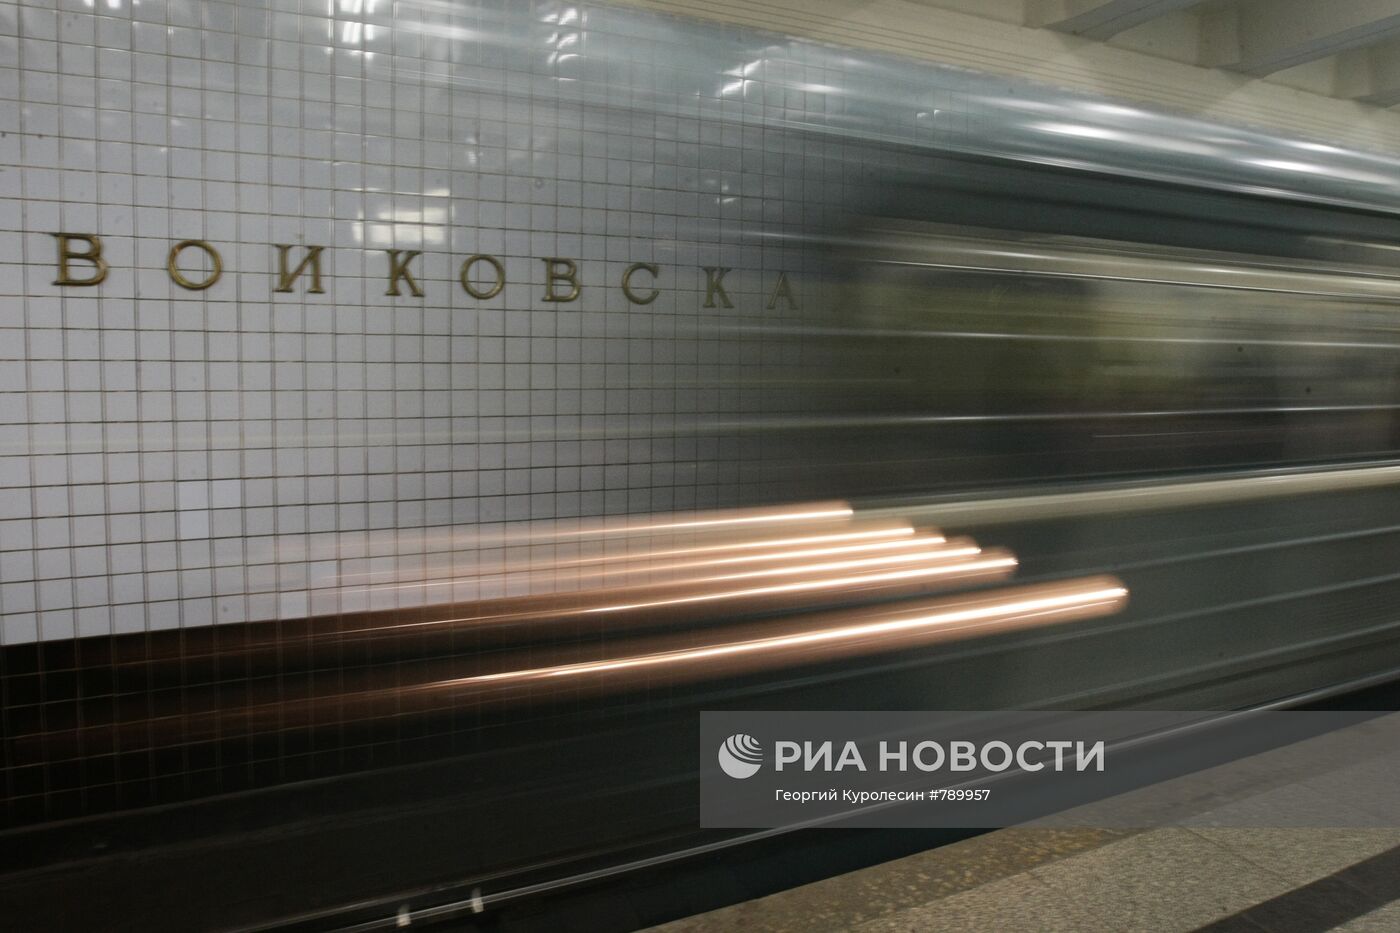 На станции метро "Войковская"